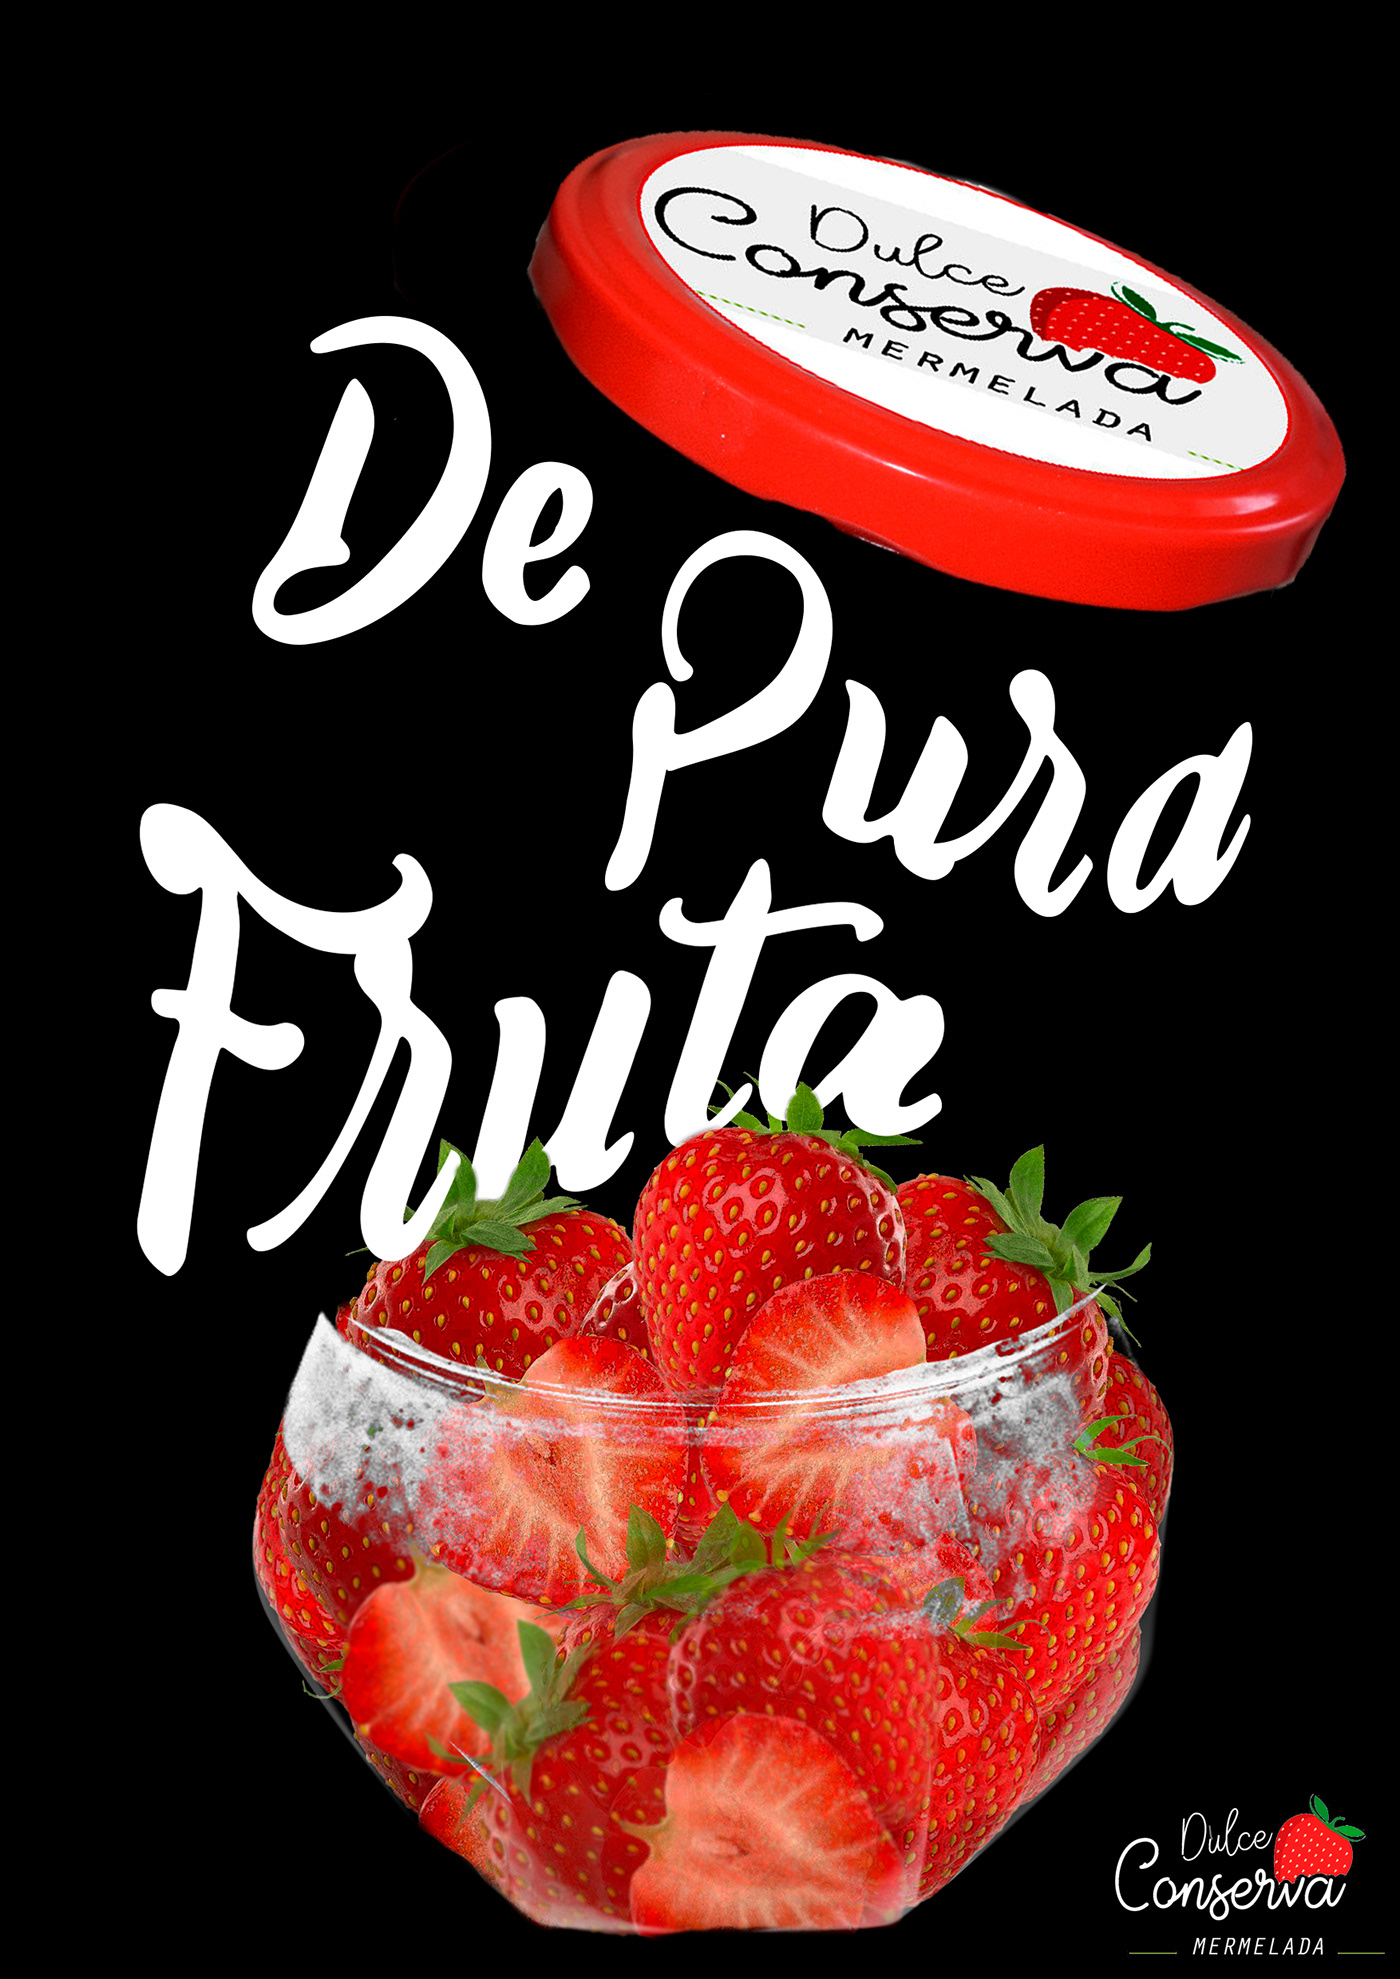 mermelada fresa metafora fresa mermelada vidrio cartel poster Dulce ROJ frut